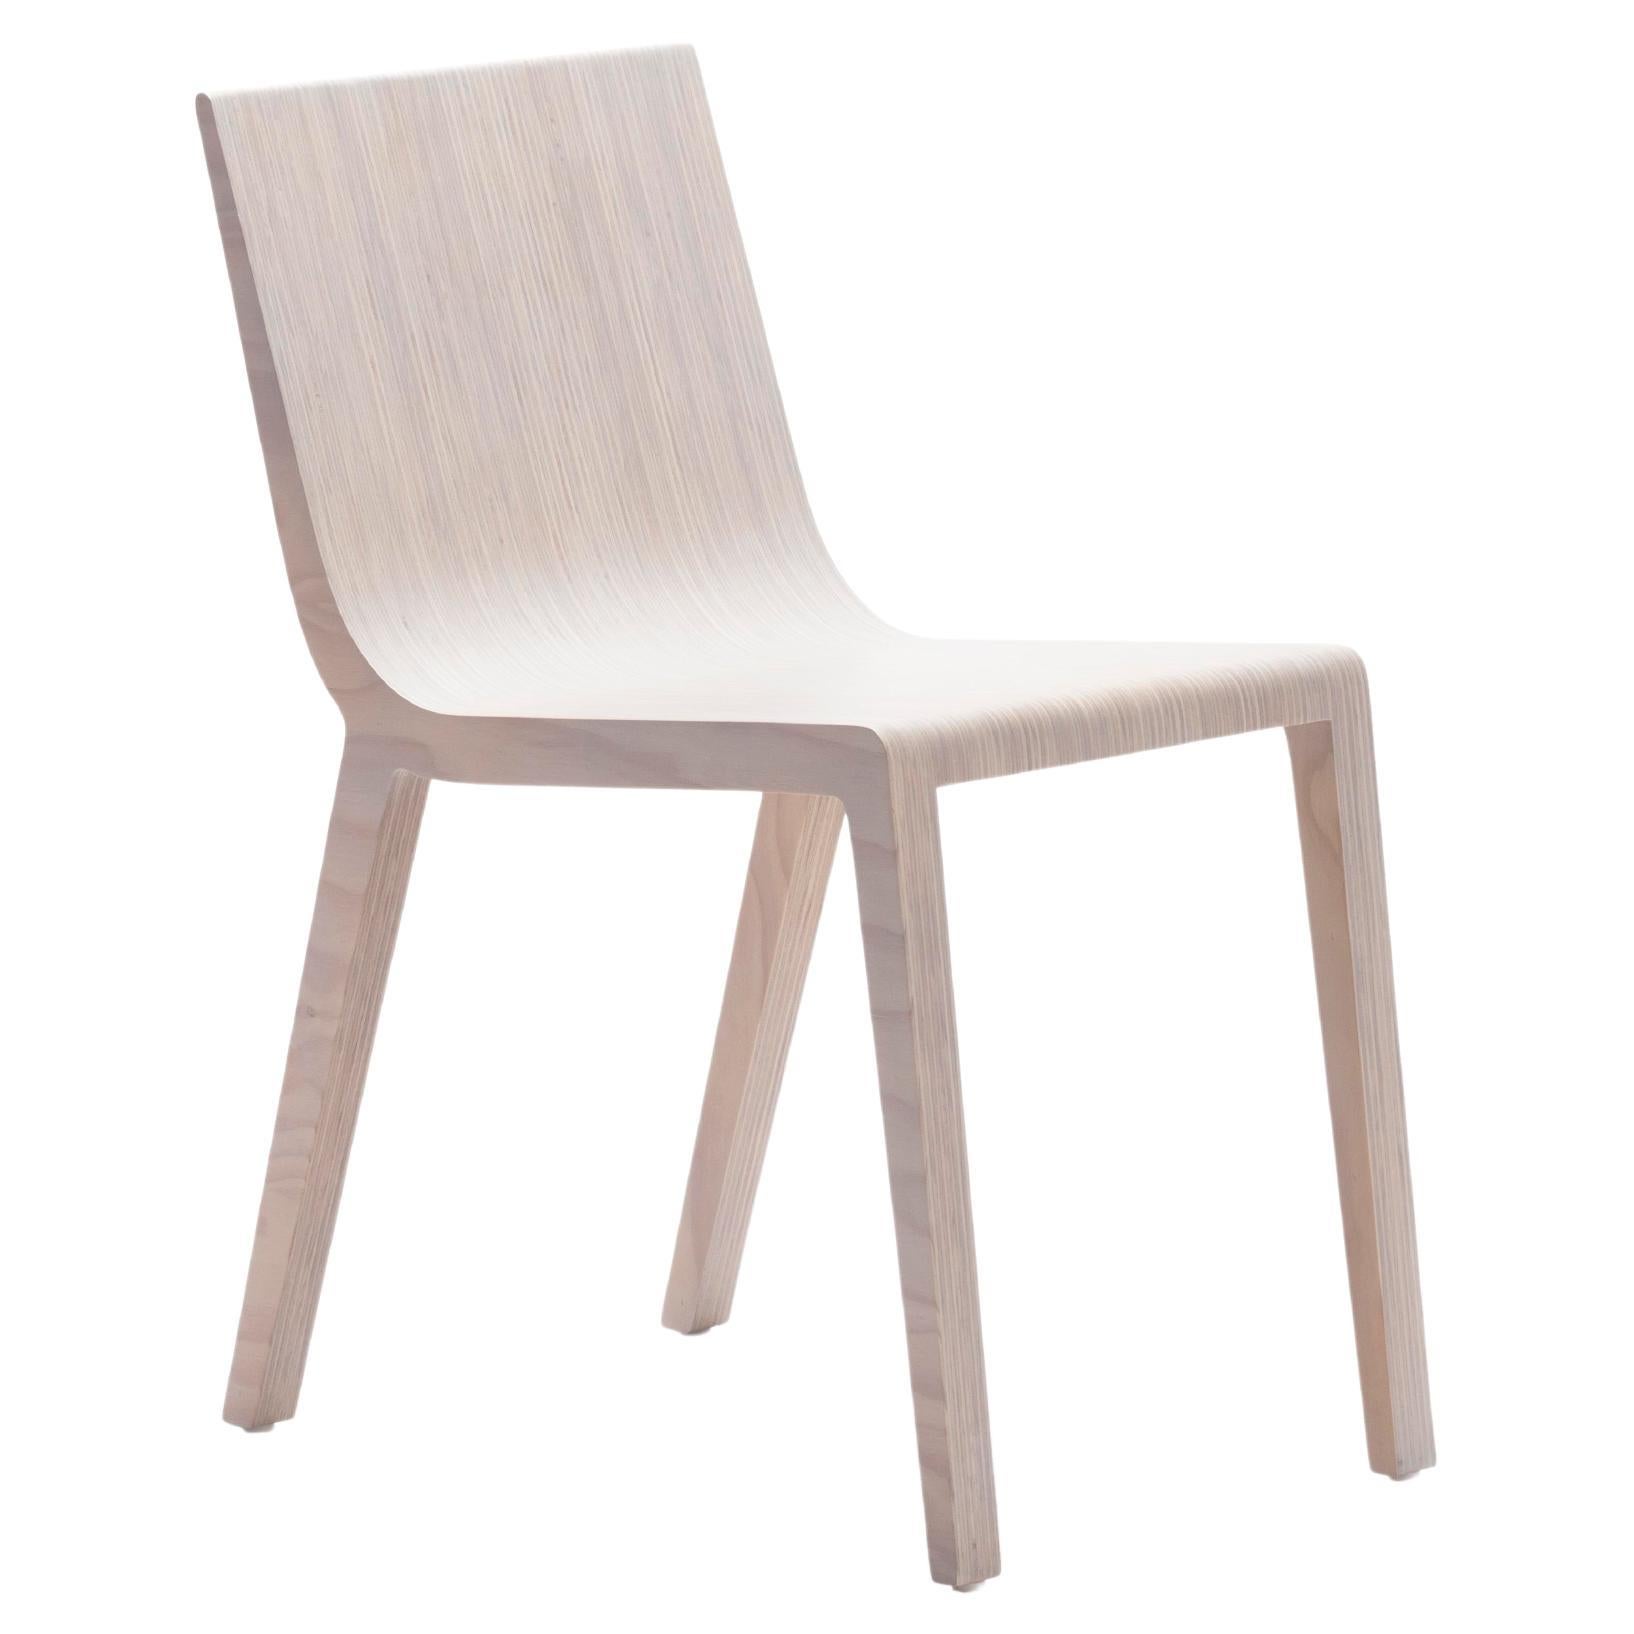 Chaise Y de Piegatto, une chaise contemporaine et minimaliste